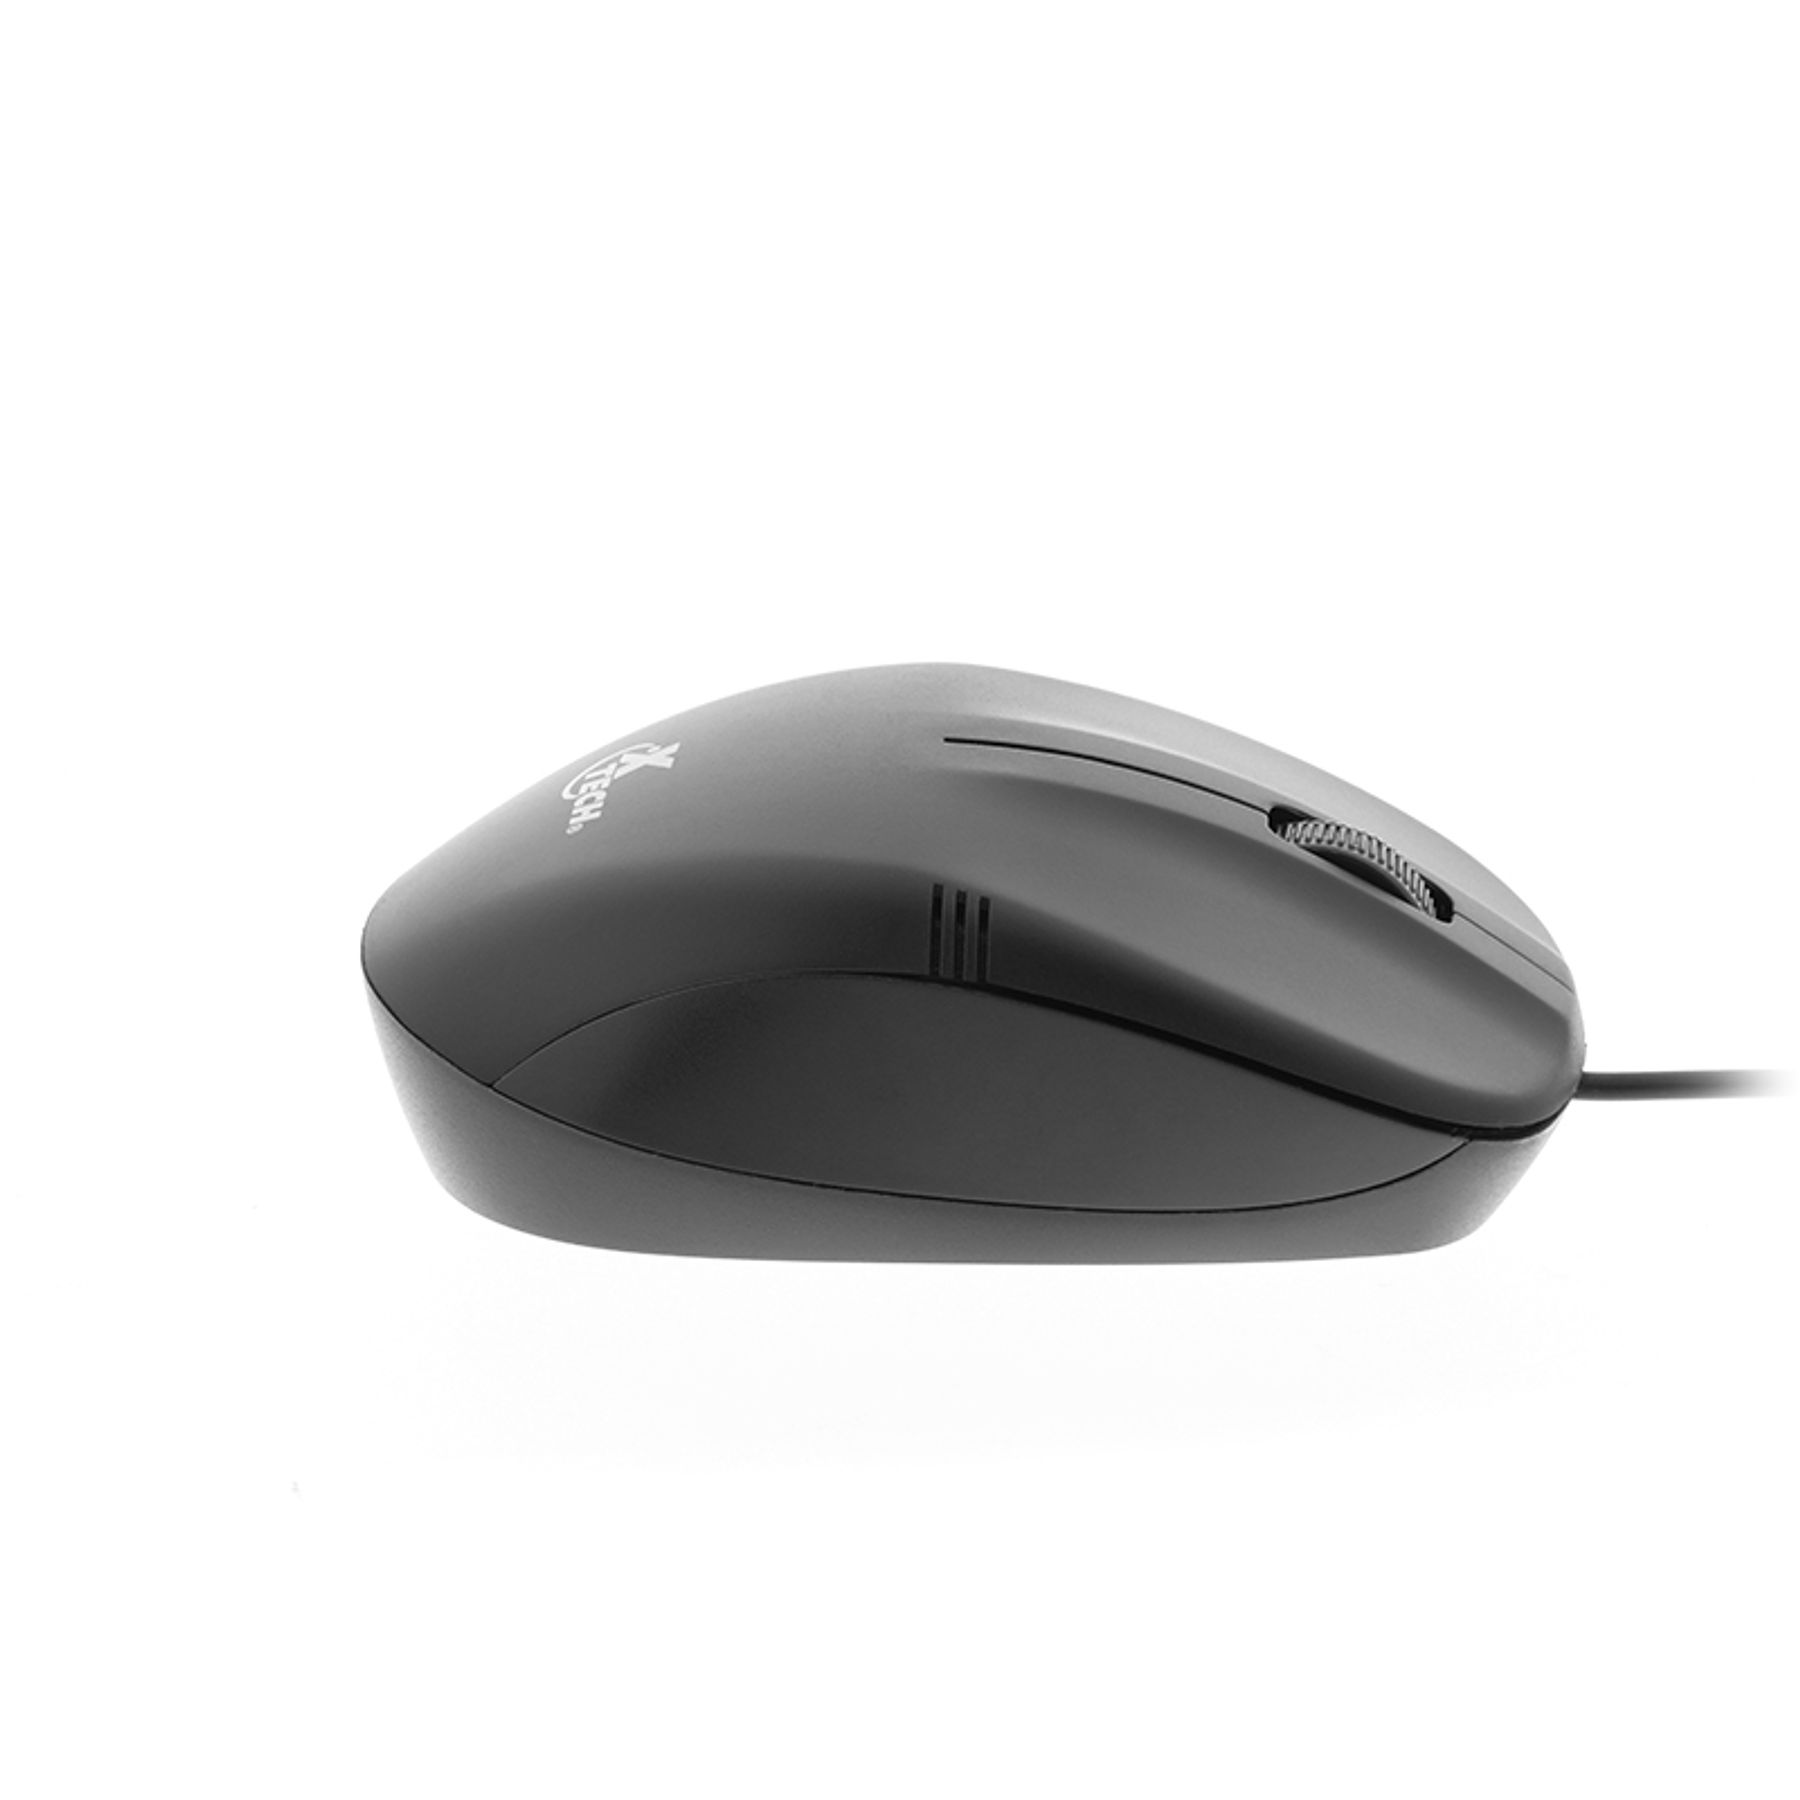 Xtech XTM-205 El mouse 3D perfecto para juegos y diseño